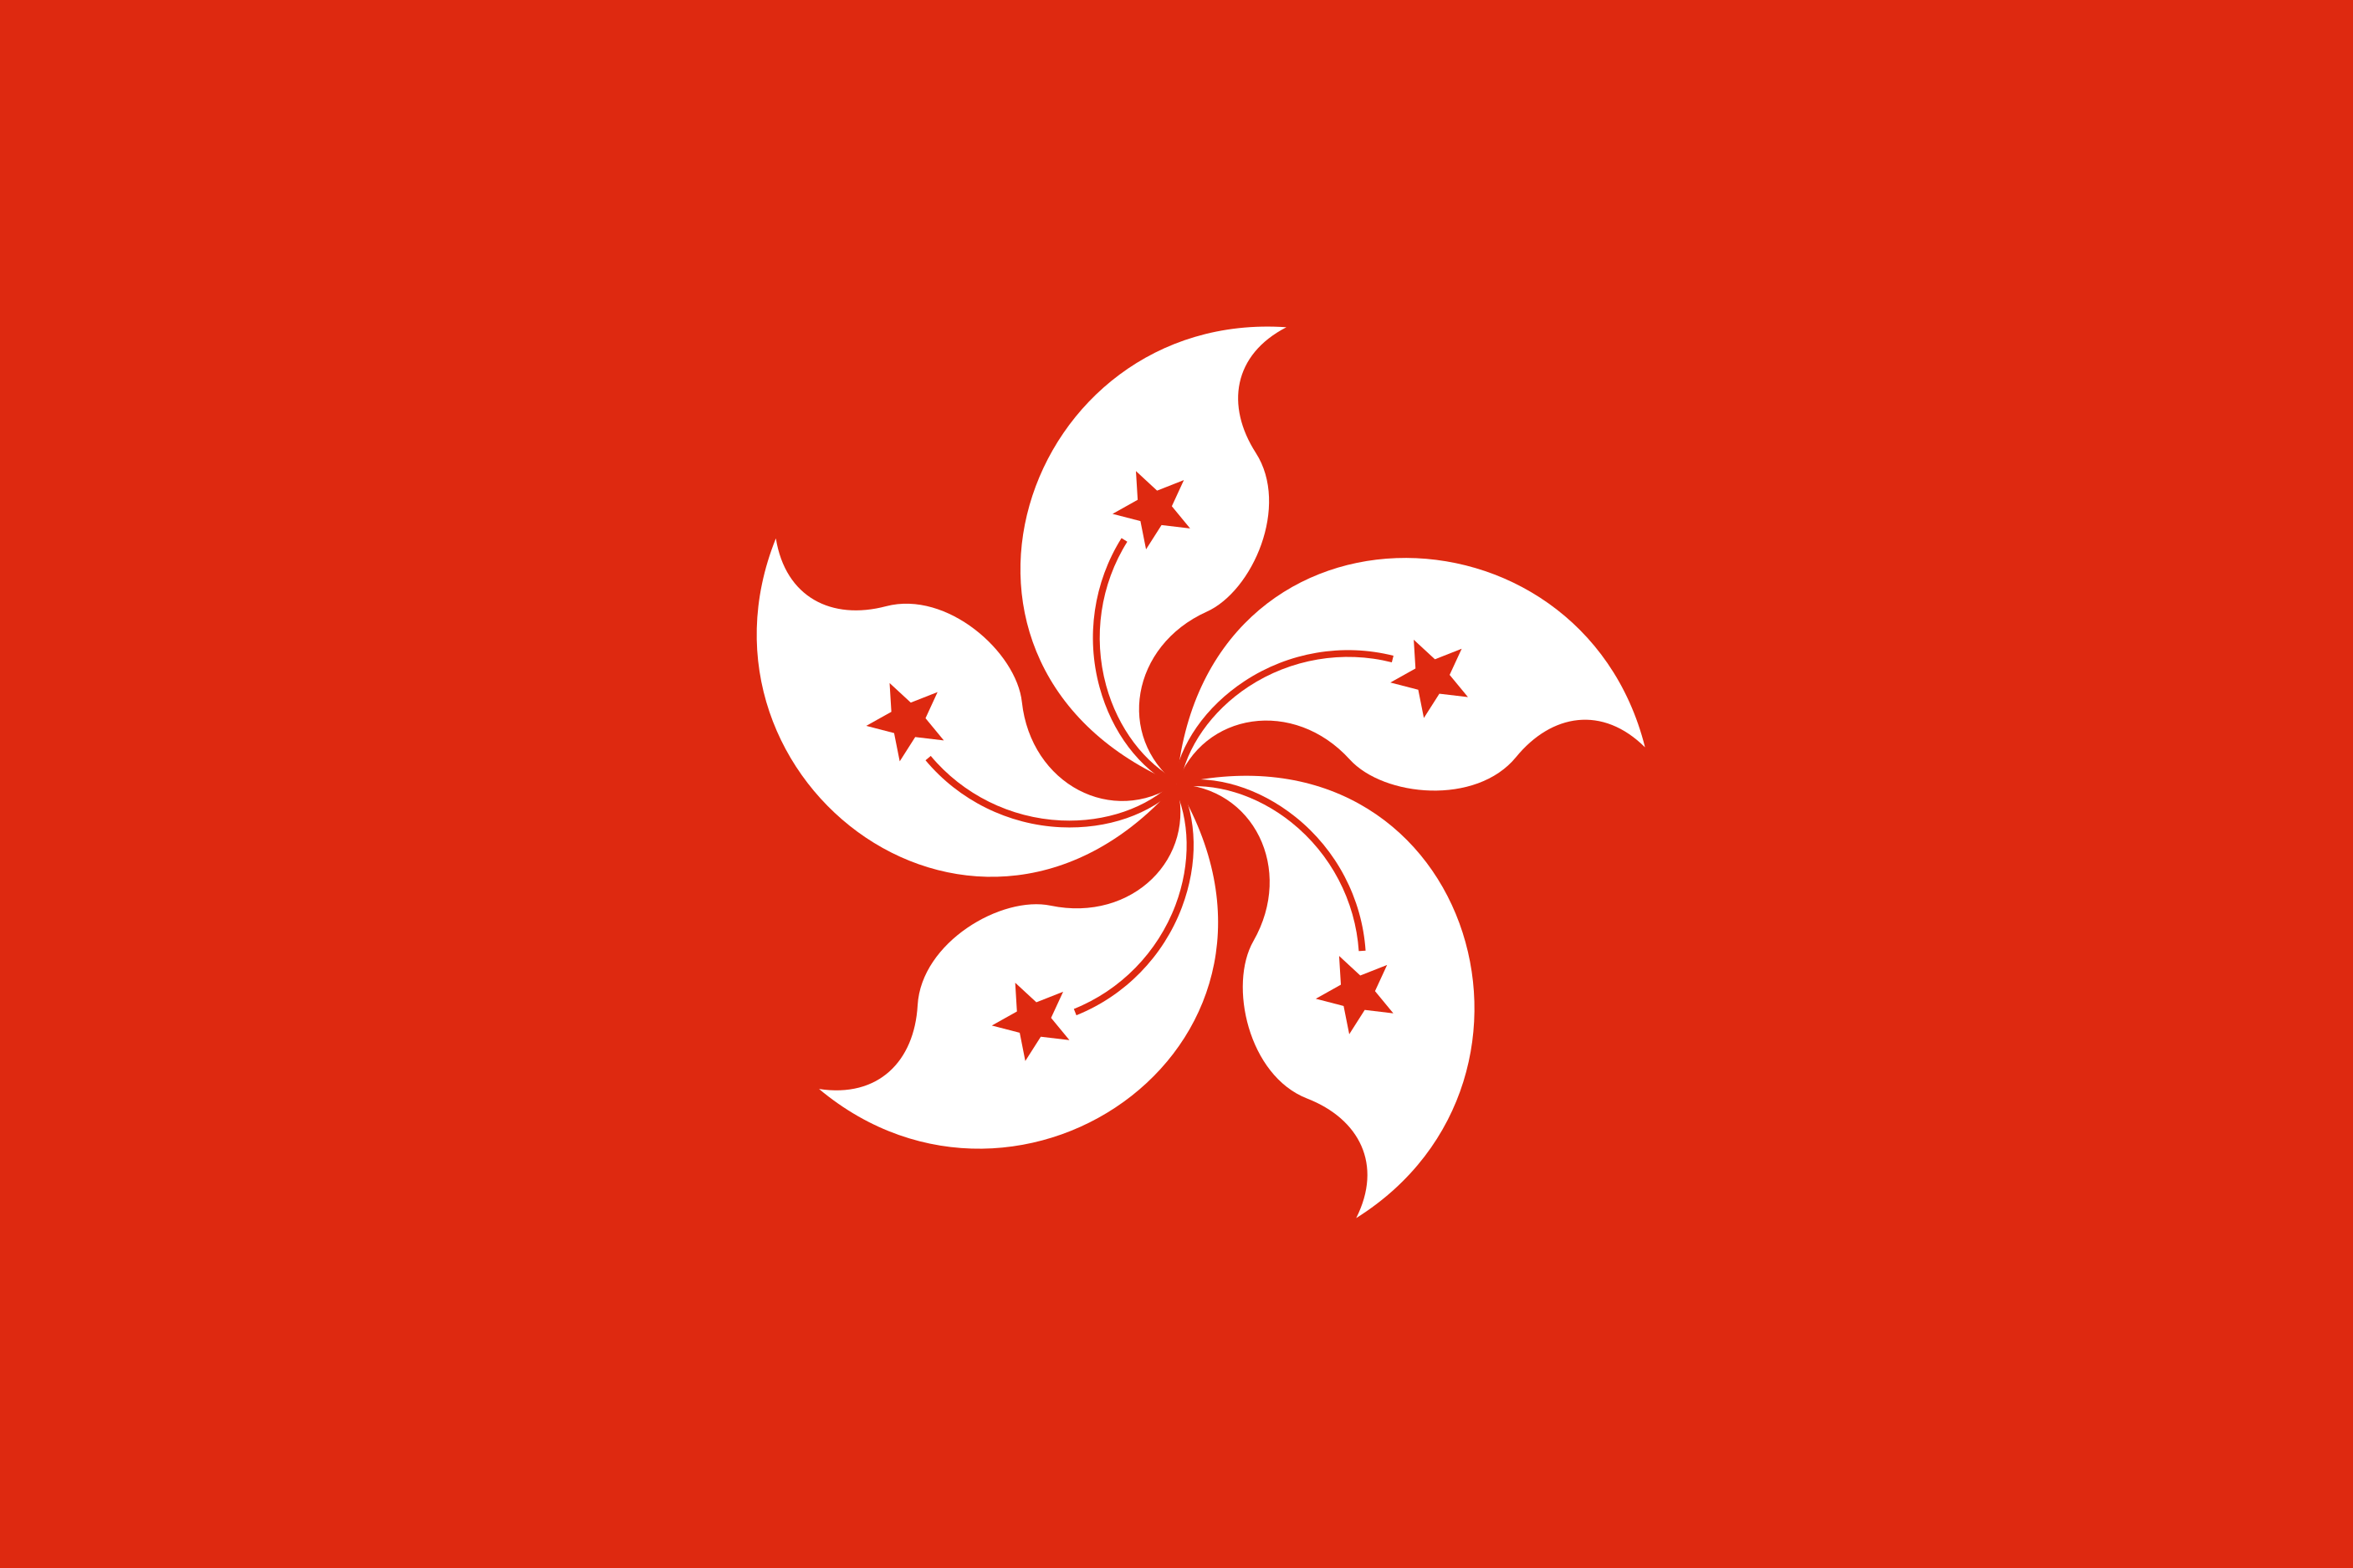 Hong Kong Flag Image - Free Download